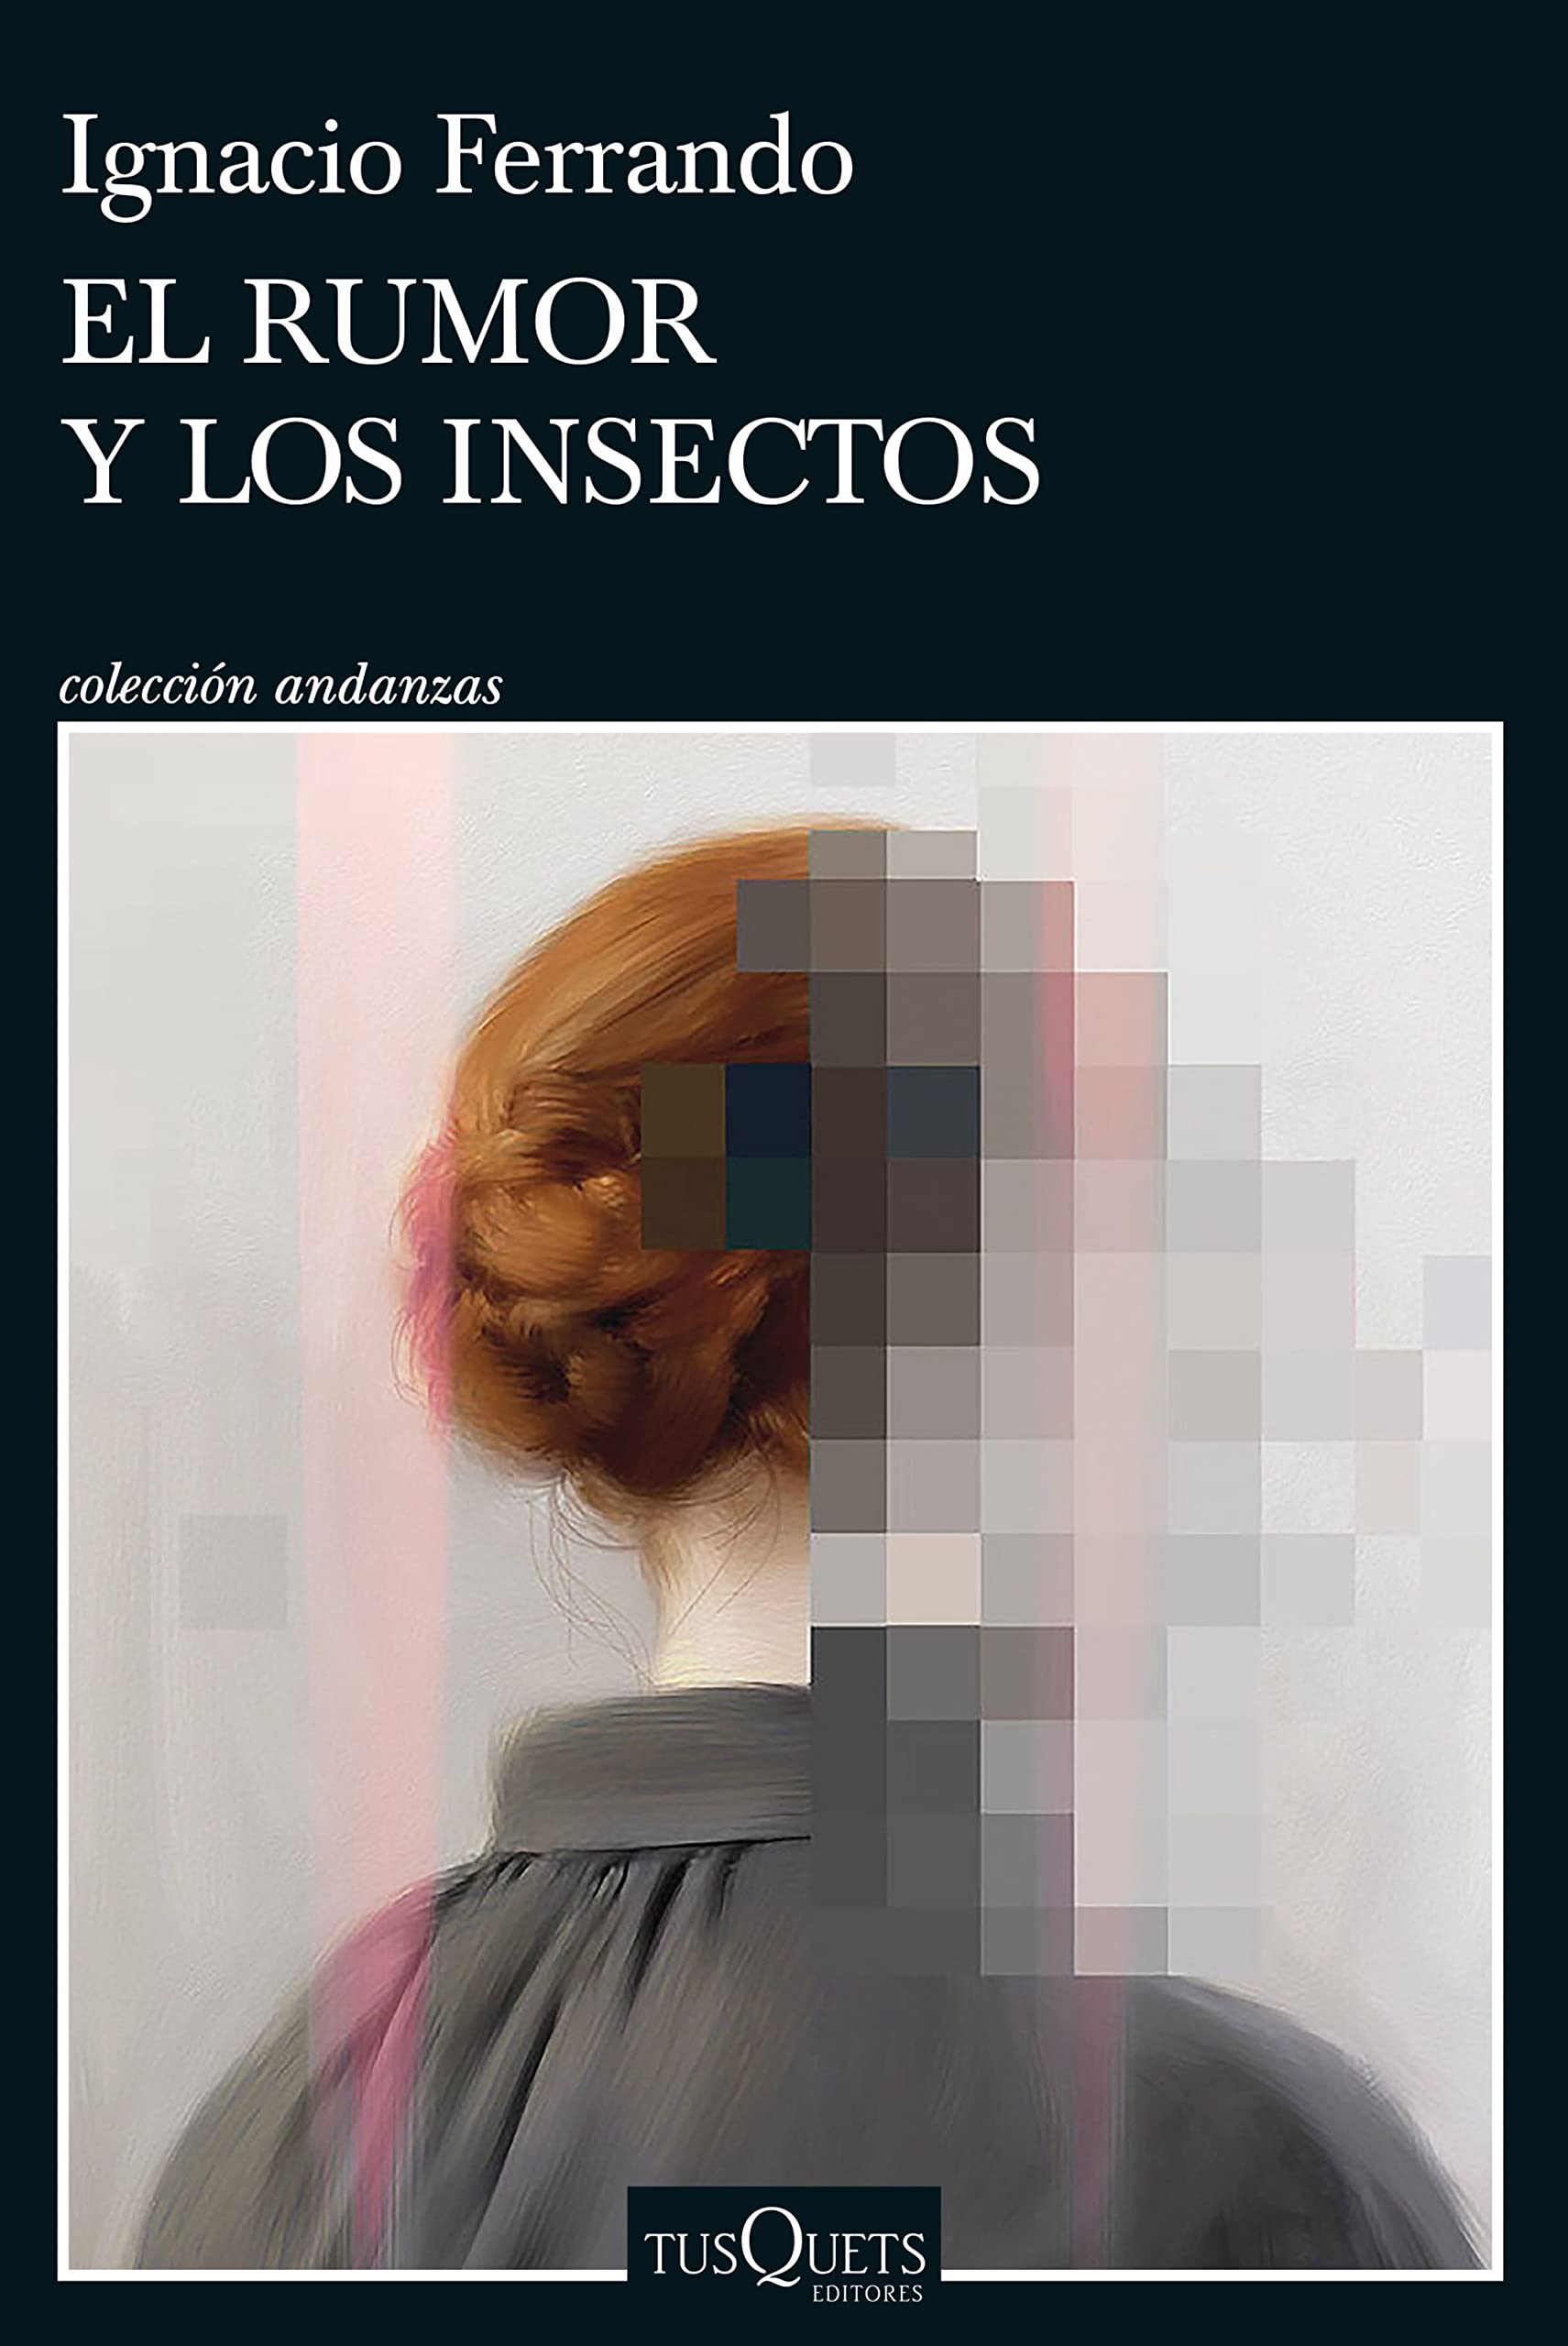 Zenda recomienda: El rumor y los insectos, de Ignacio Ferrando